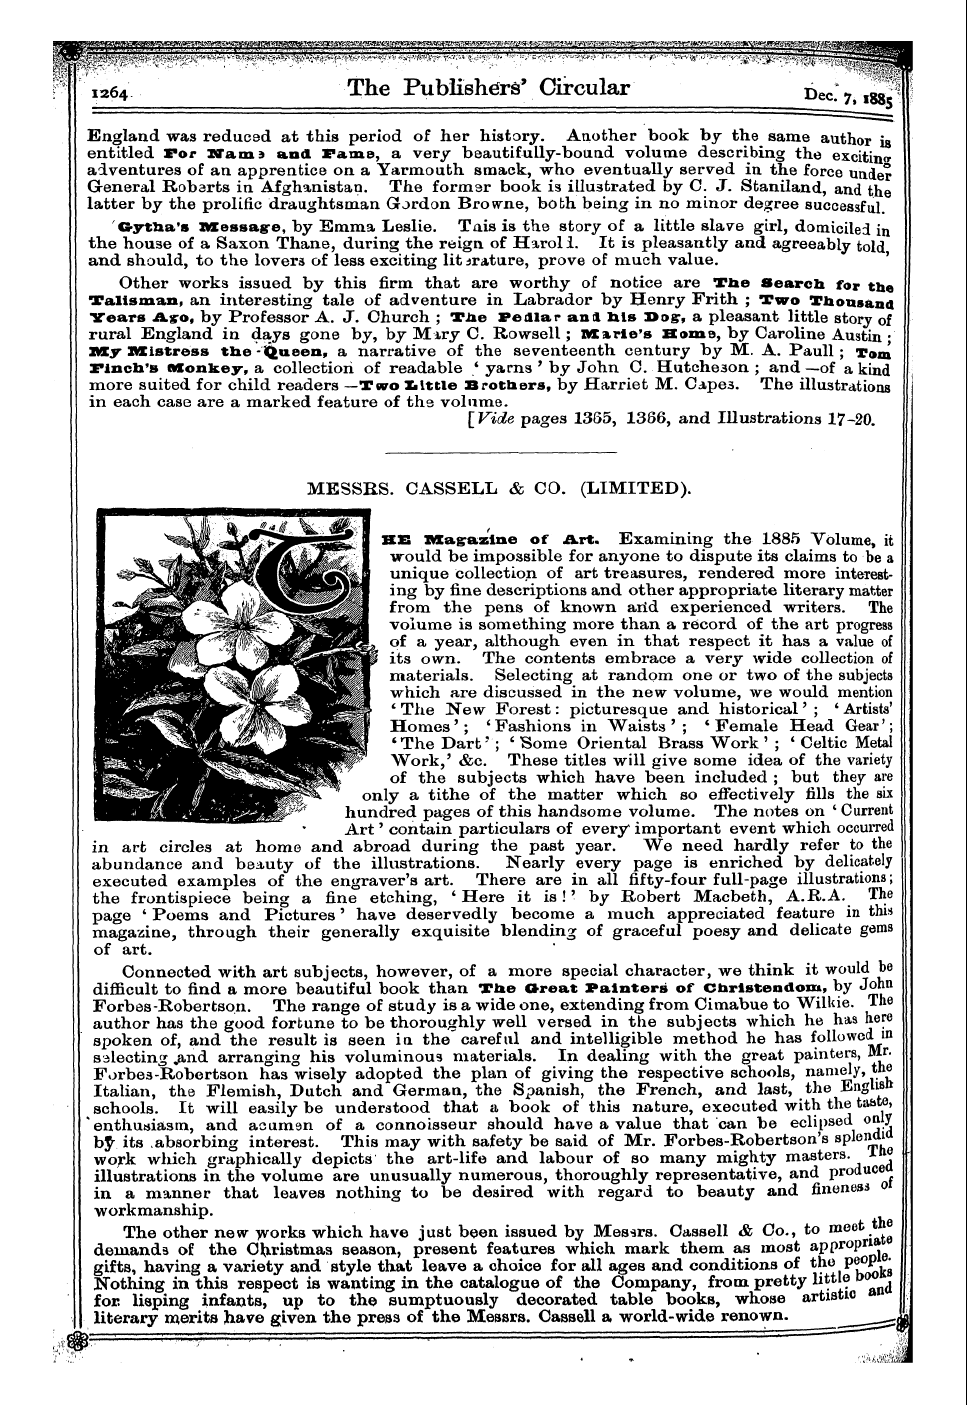 Publishers’ Circular (1880-1890): jS F Y, 1st edition - Ar00302